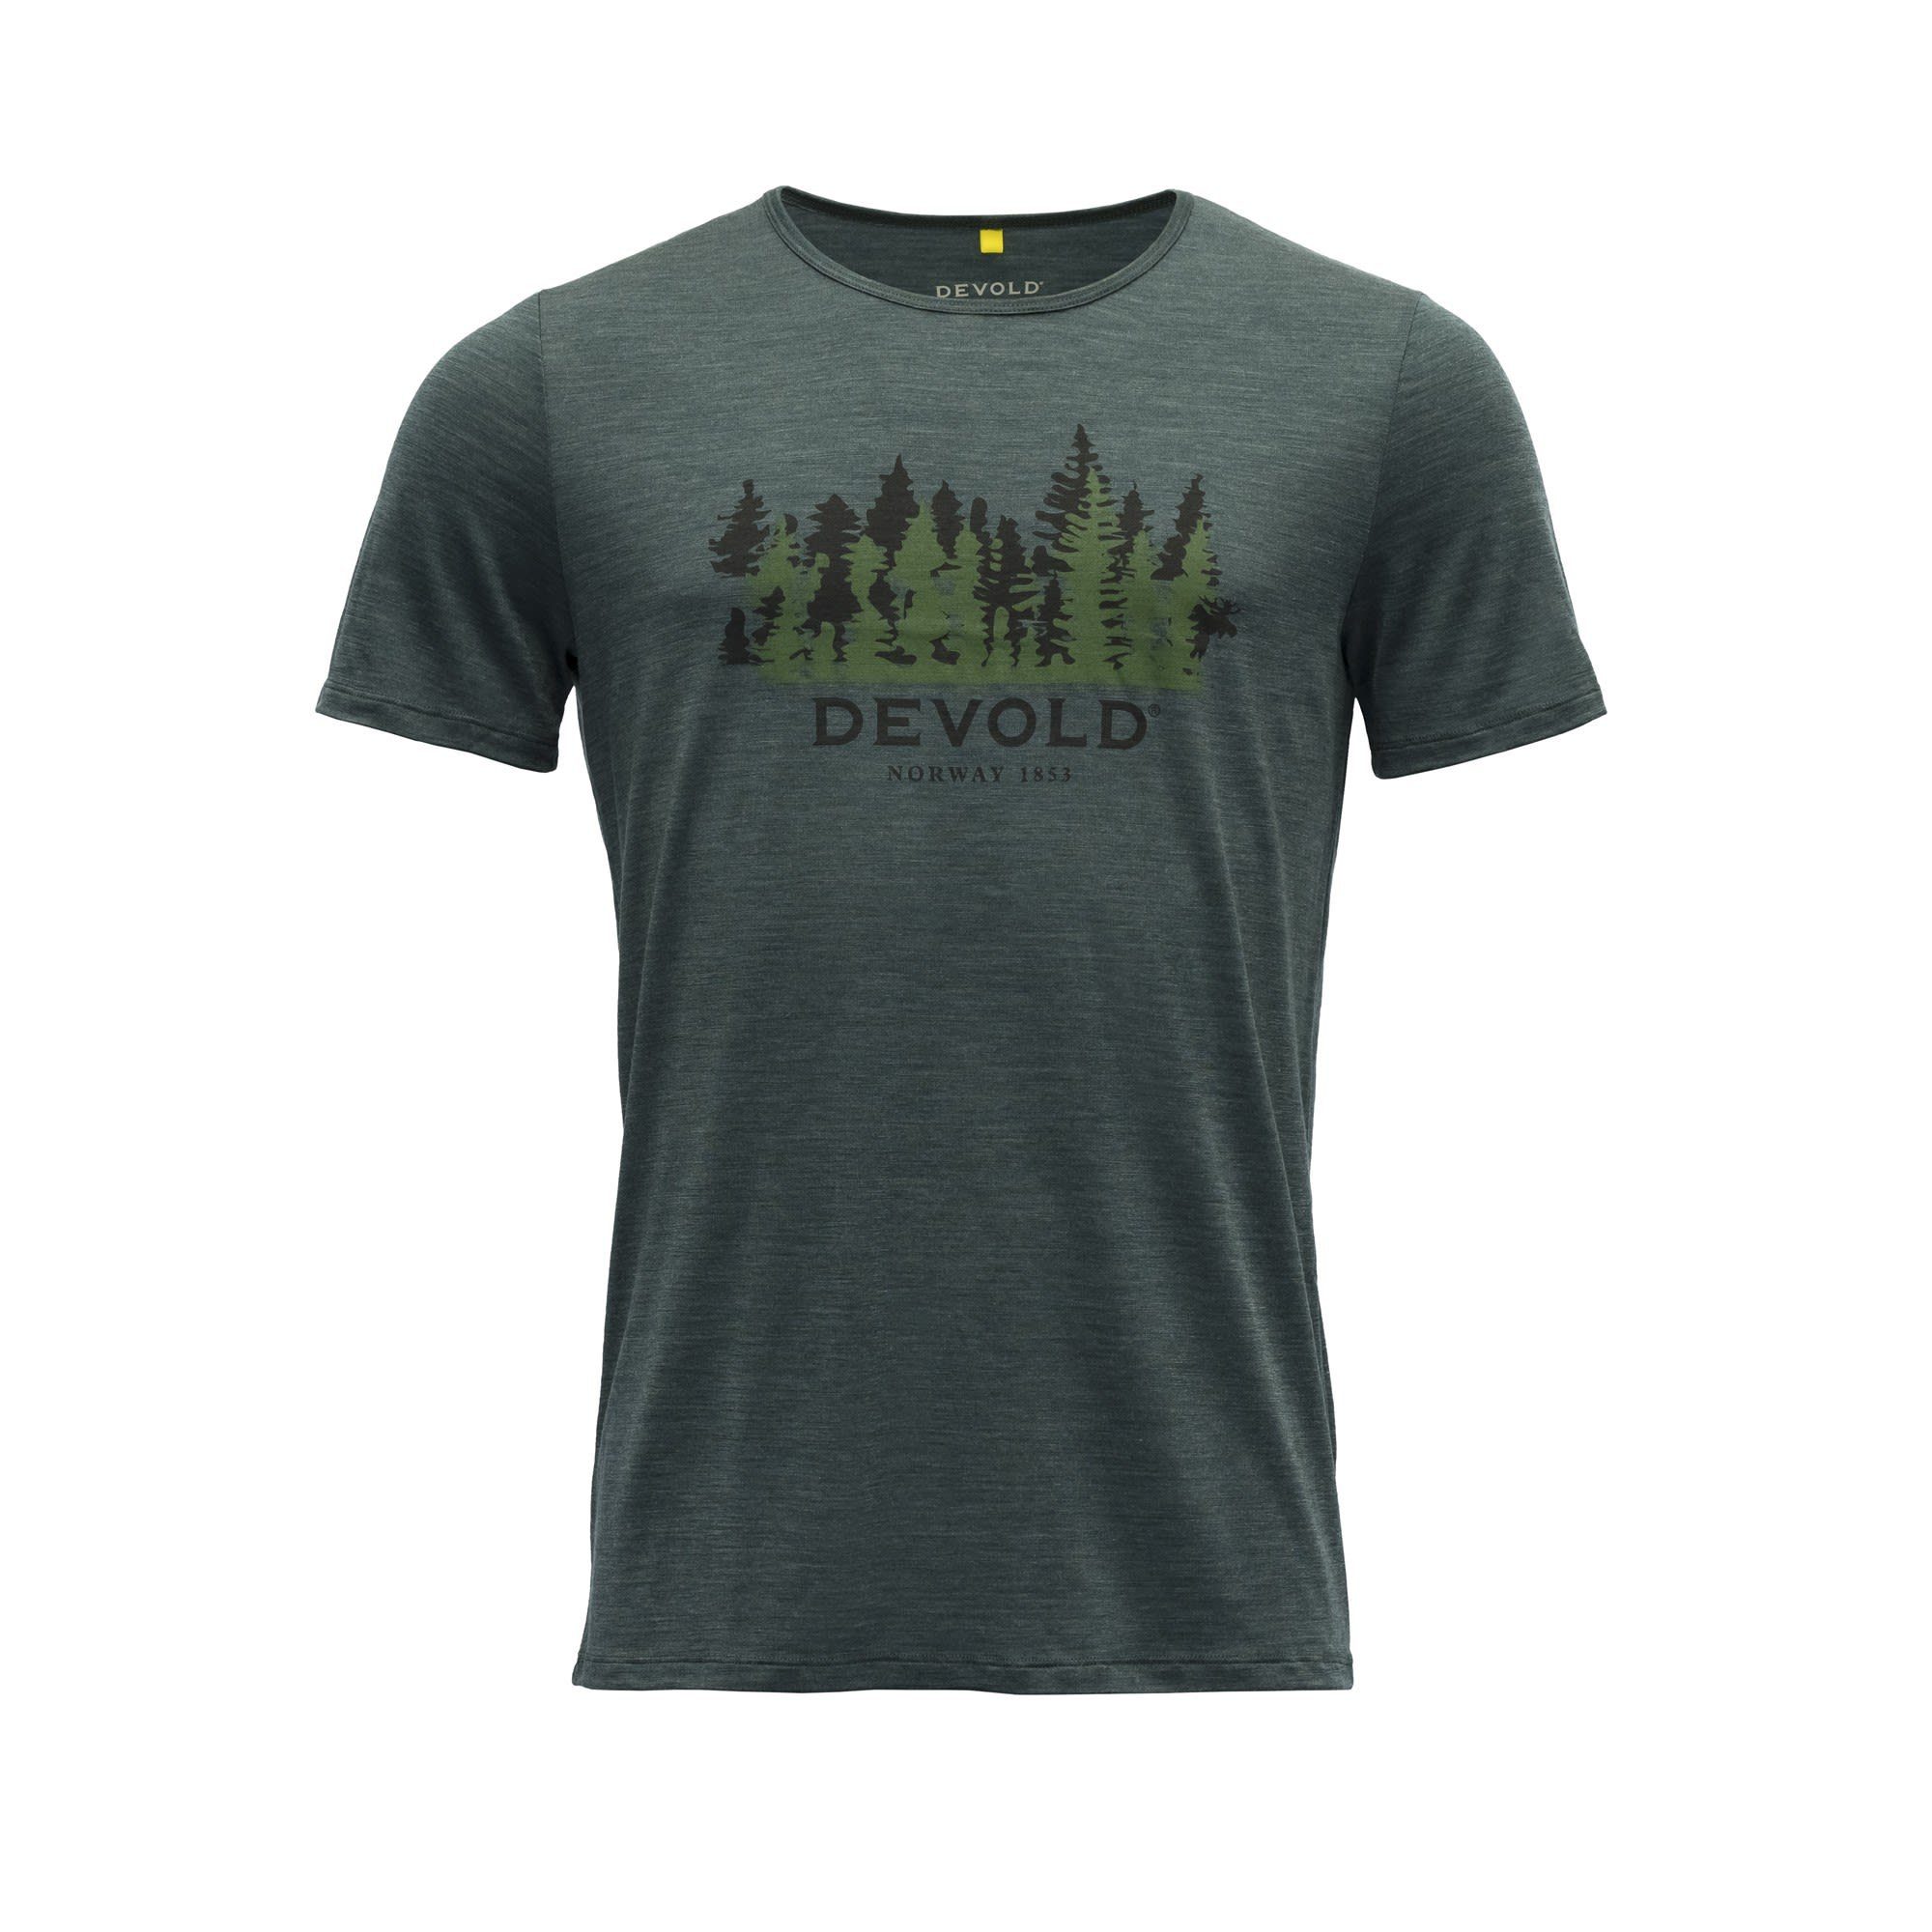 M Ornakken Devold Woods Herren 130 Merino Tee Devold T-Shirt